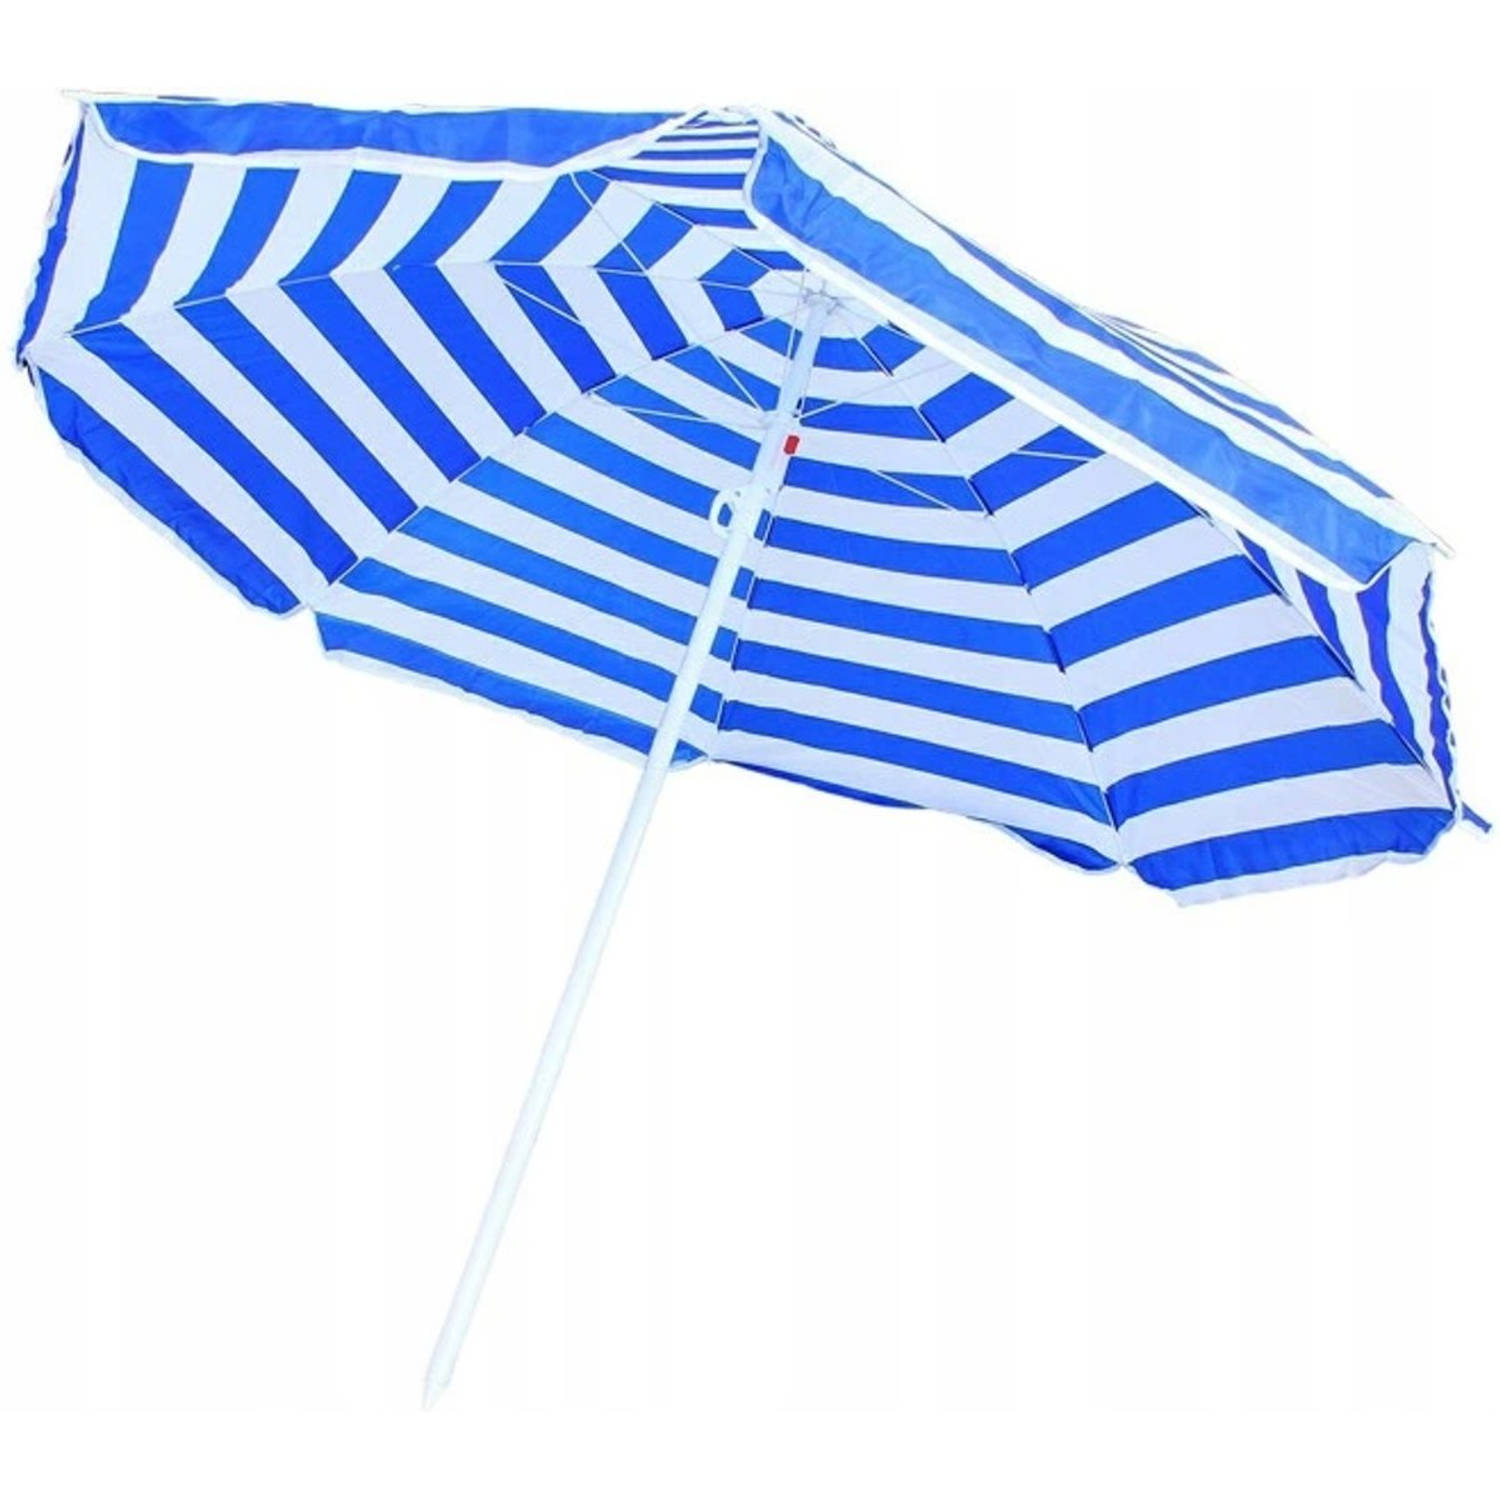 ongebruikt Voorwaarden Dempsey Luxe Zonneparasol - Inklapbare Strandparasol Parasol Voor Terras/Tuin/Strand/Camping/Zwembad  - Ø170 CM Groot - Blauw/wit | Blokker